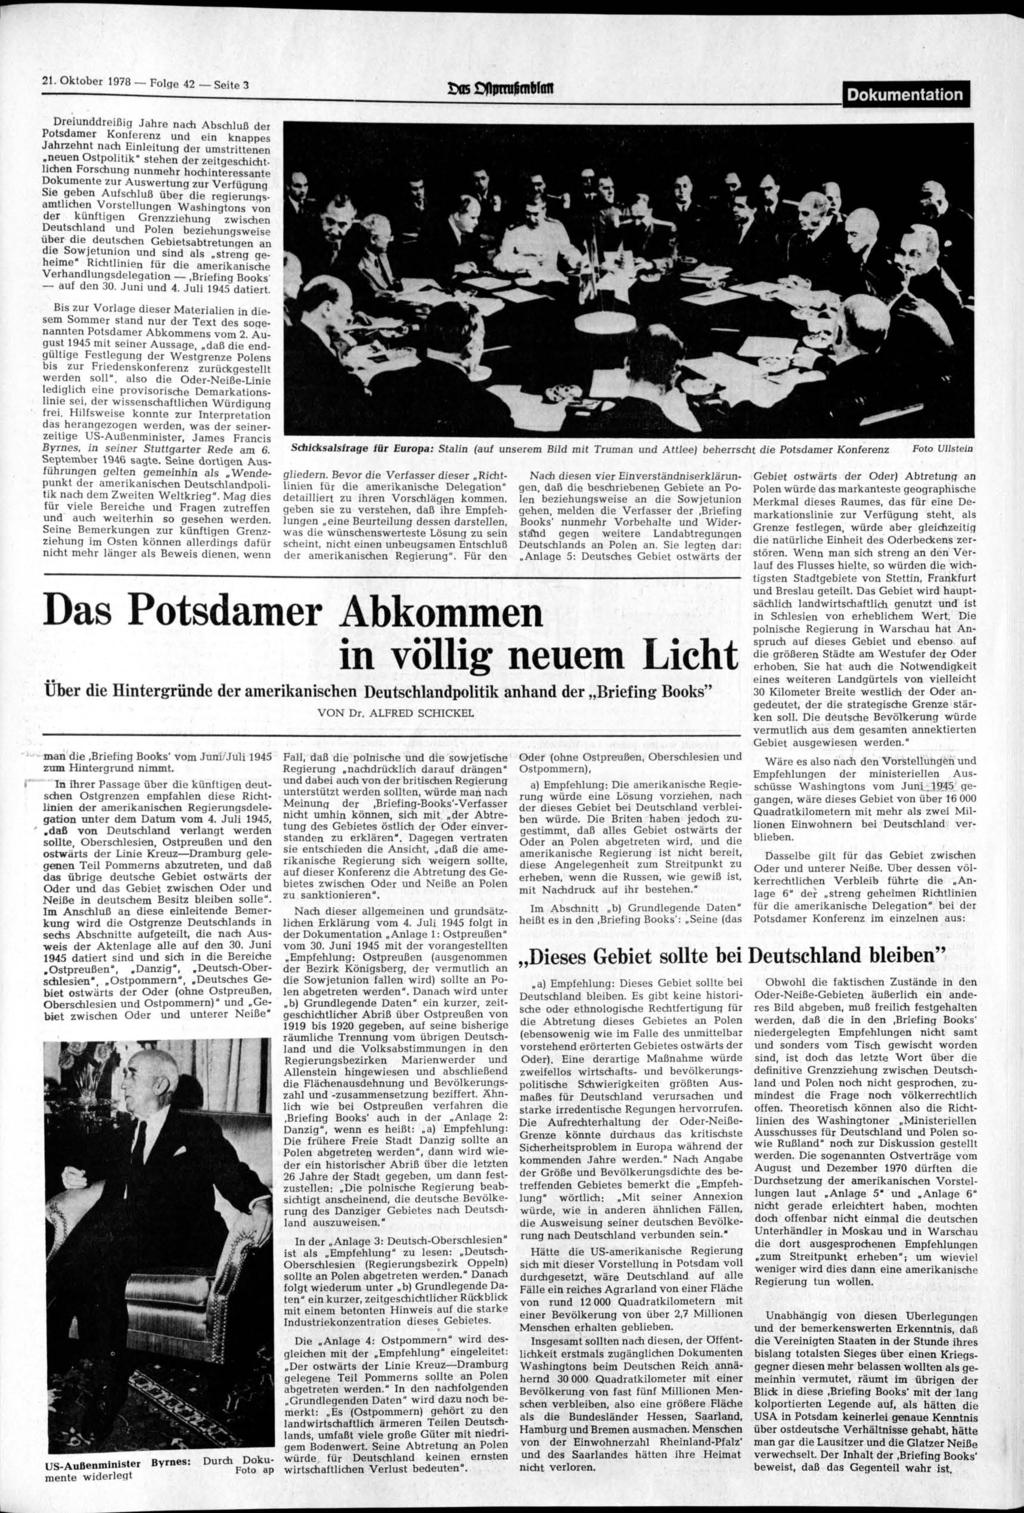 21. Oktober 1978 Folge 42 Seite 3 Dokumentation Dreiunddreißig Jahre nach Abschluß der Potsdamer Konferenz und ein knappes Jahrzehnt nach Einleitung der umstrittenen neuen Ostpolitik" stehen der